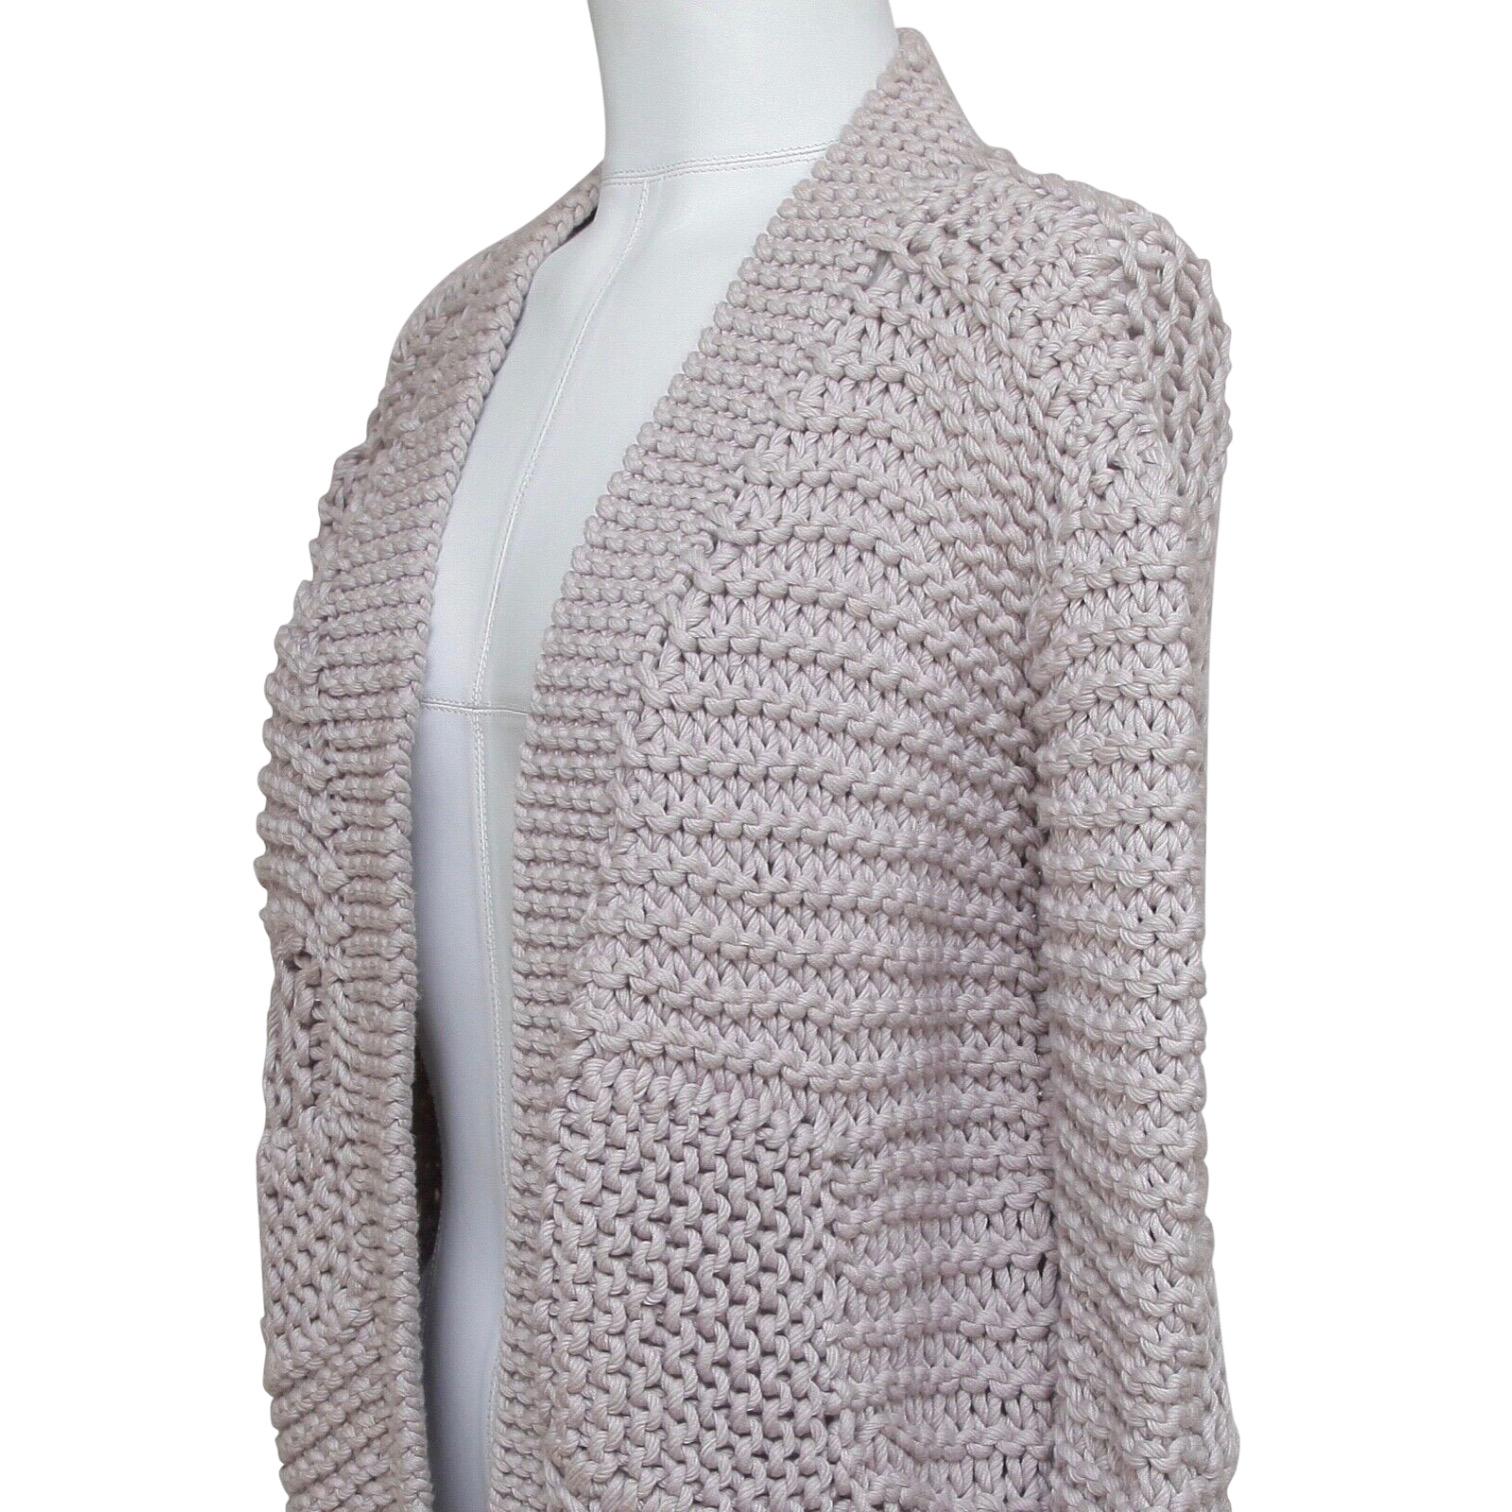 Women's CHLOE Cardigan Sweater Knit Grey Lavender Open Front Long Sleeve Sz S 2008 For Sale